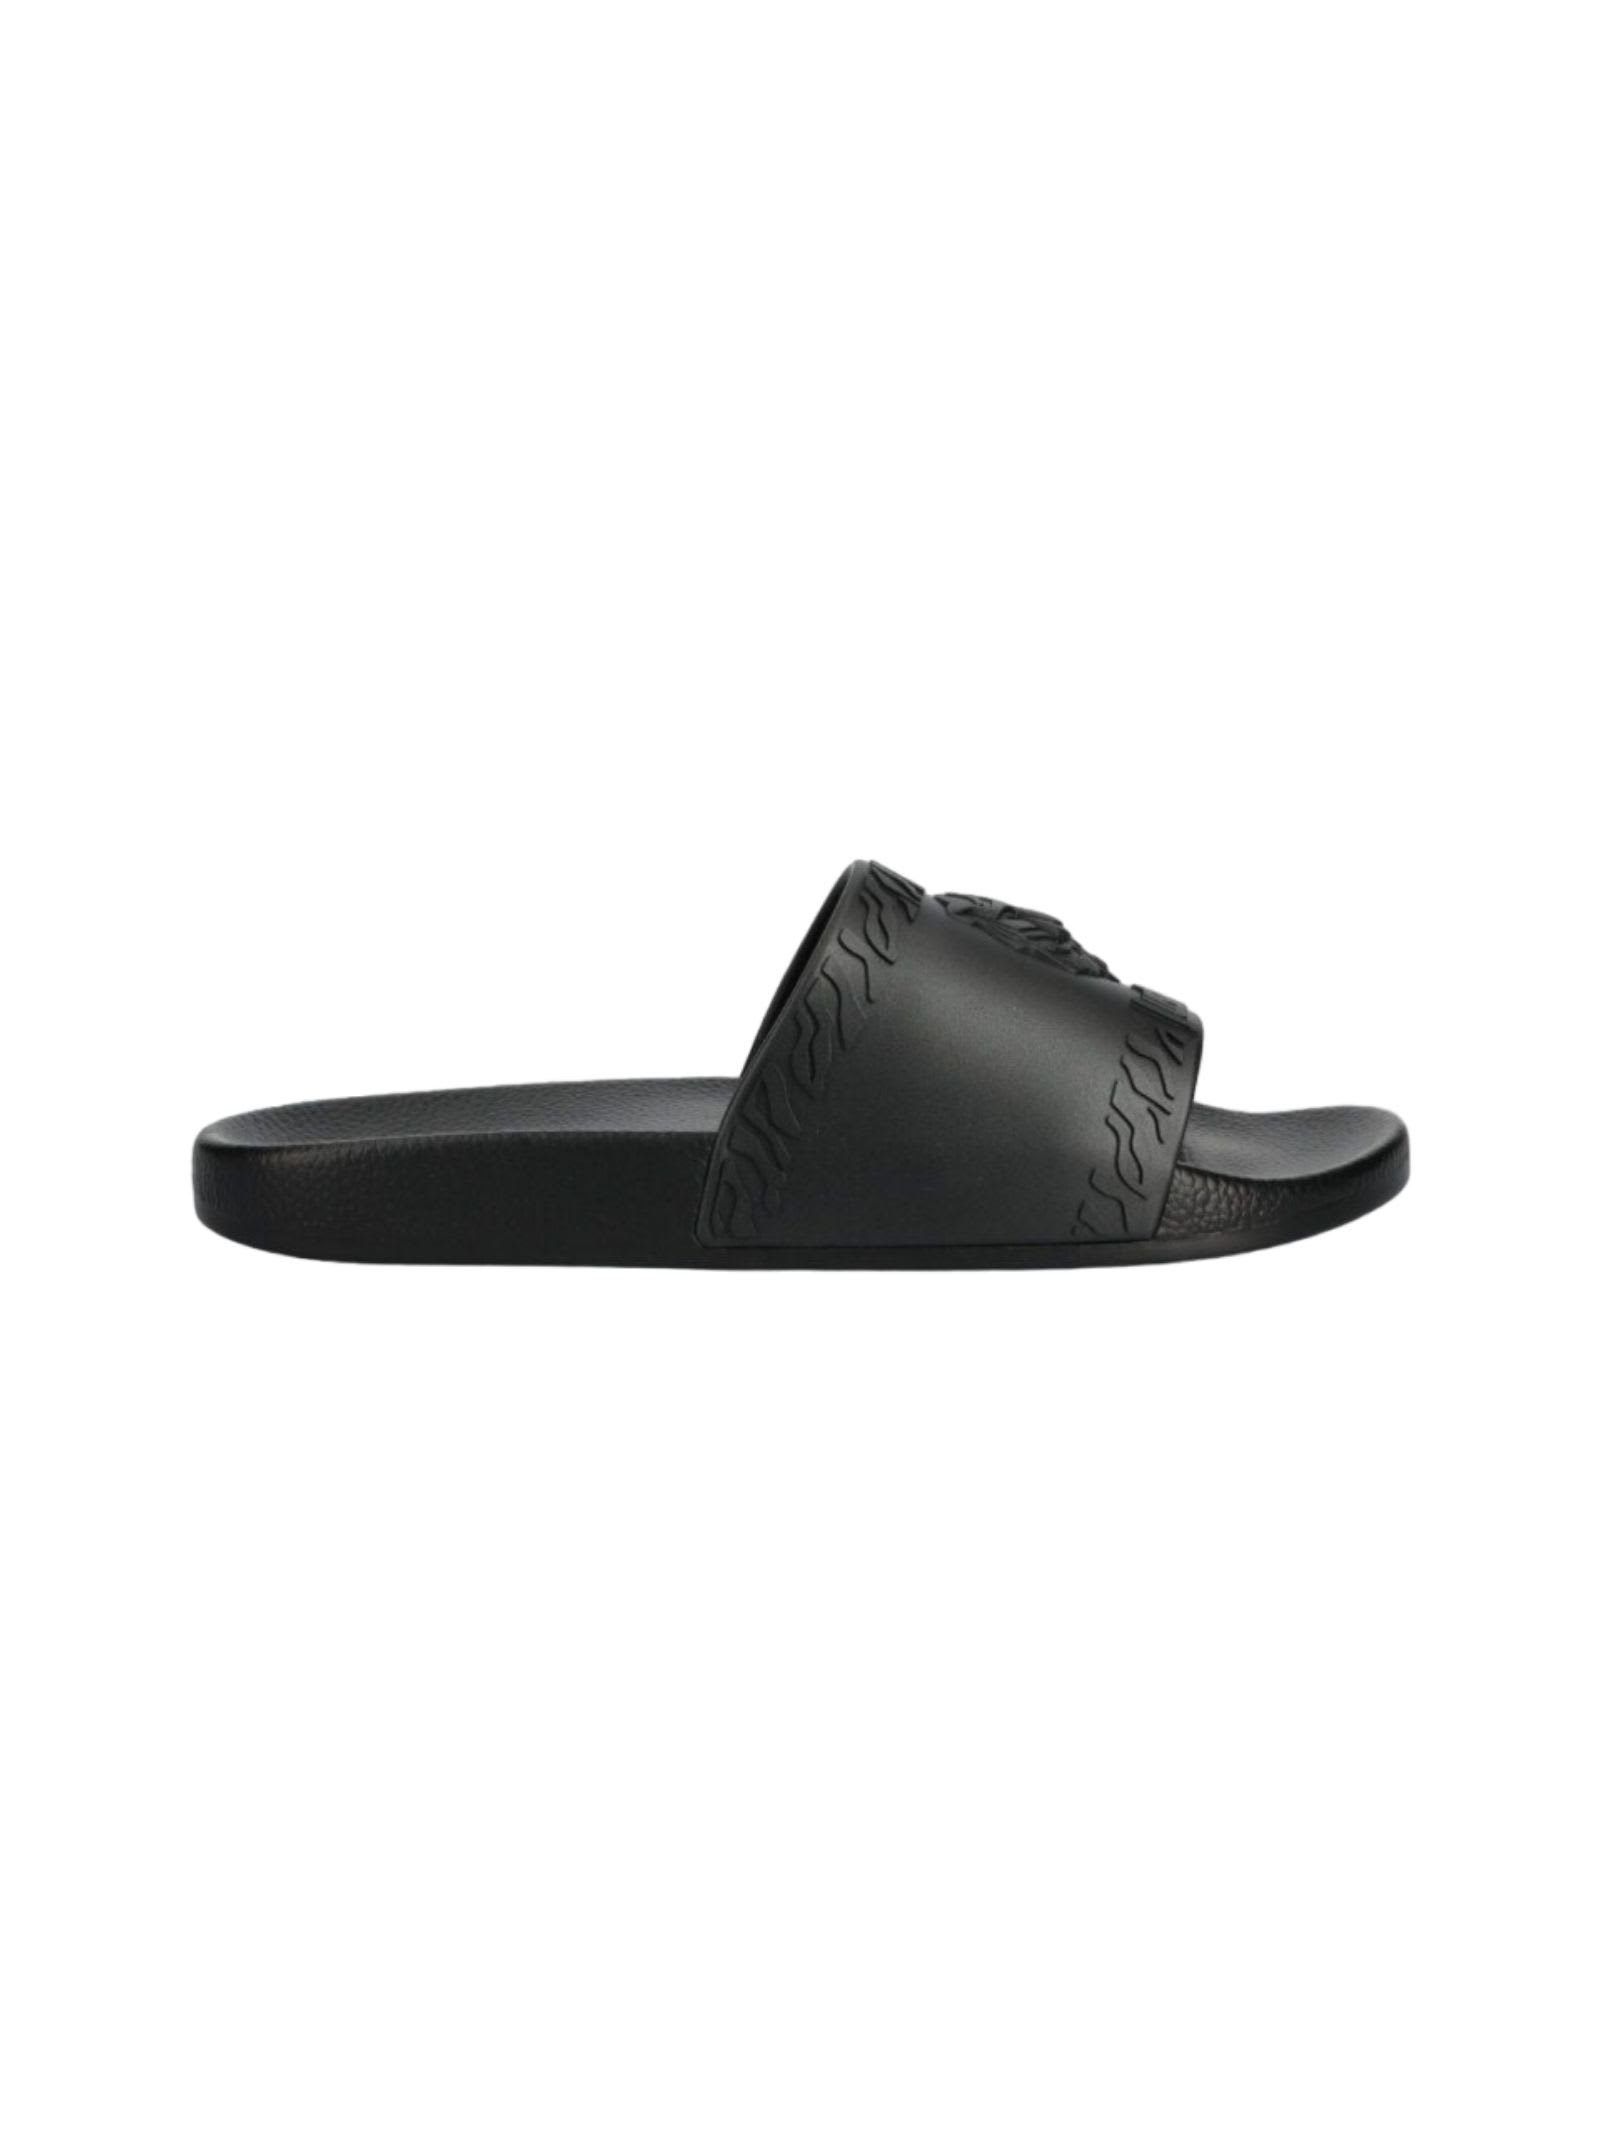 Roberto Cavalli Just Cavalli Shoes In Black